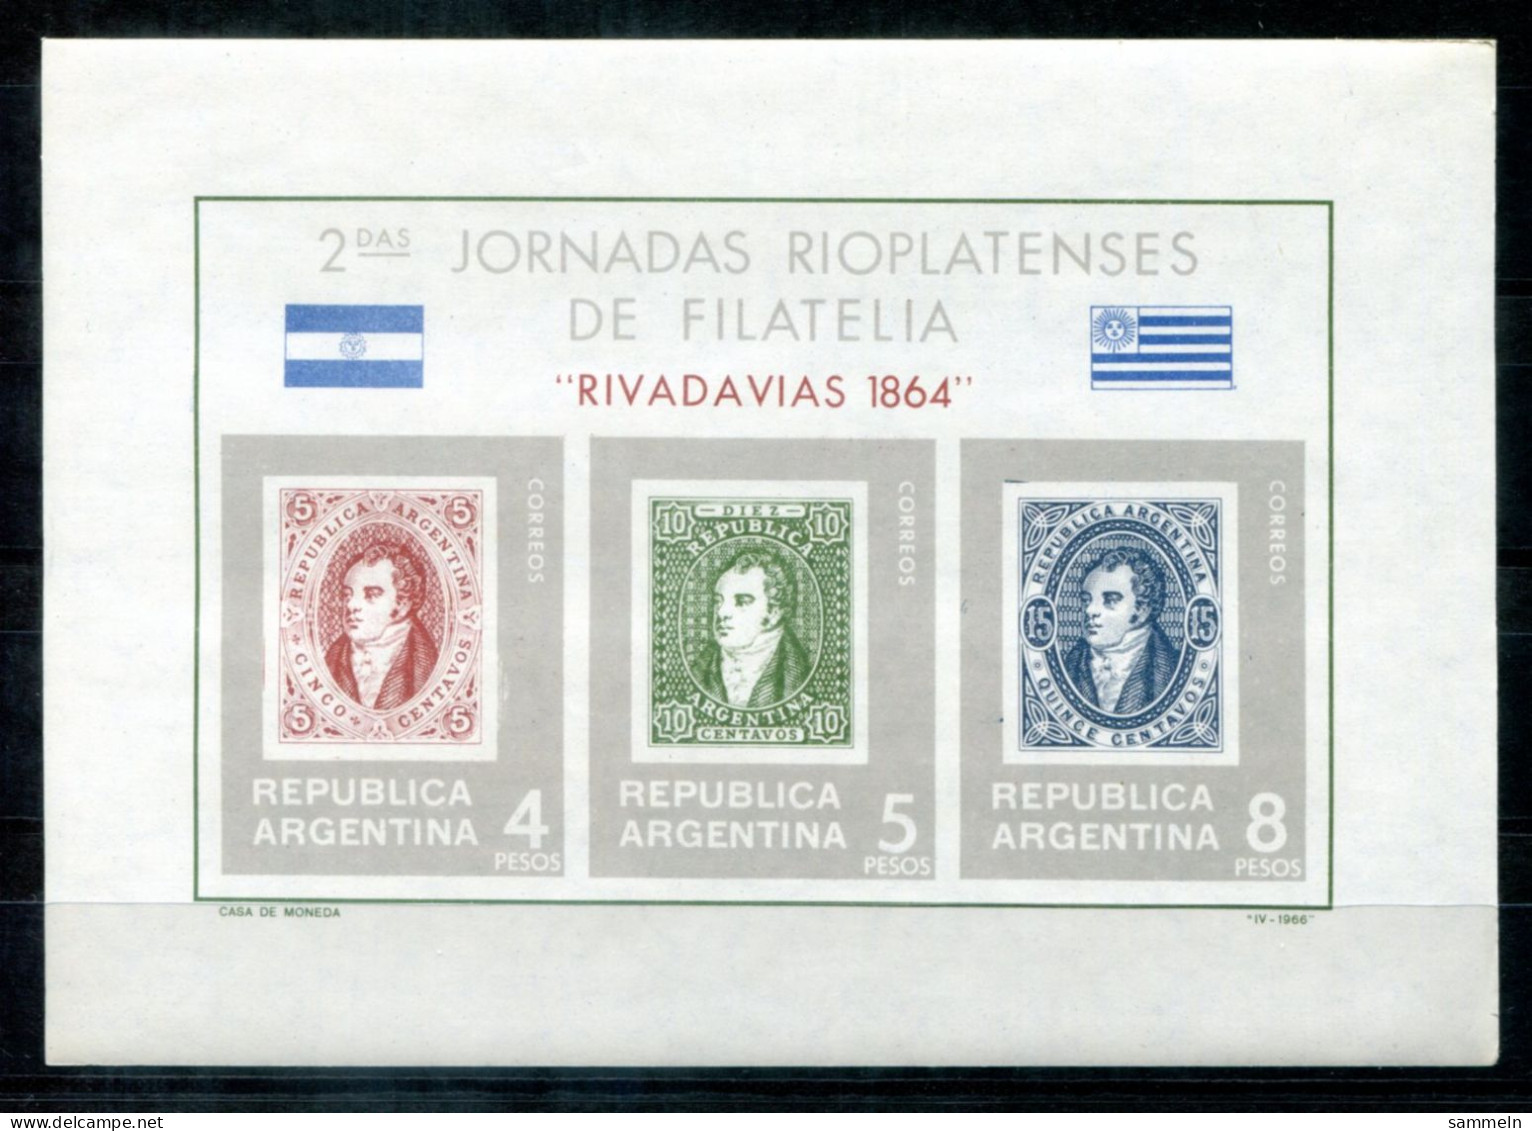 ARGENTINIEN Block 16, Bl.16 Mnh (see TEXT!!)- Marke Auf Marke, Stamp On Stamp, Timbre Sur Timbre - ARGENTINA / ARGENTINE - Blocks & Kleinbögen